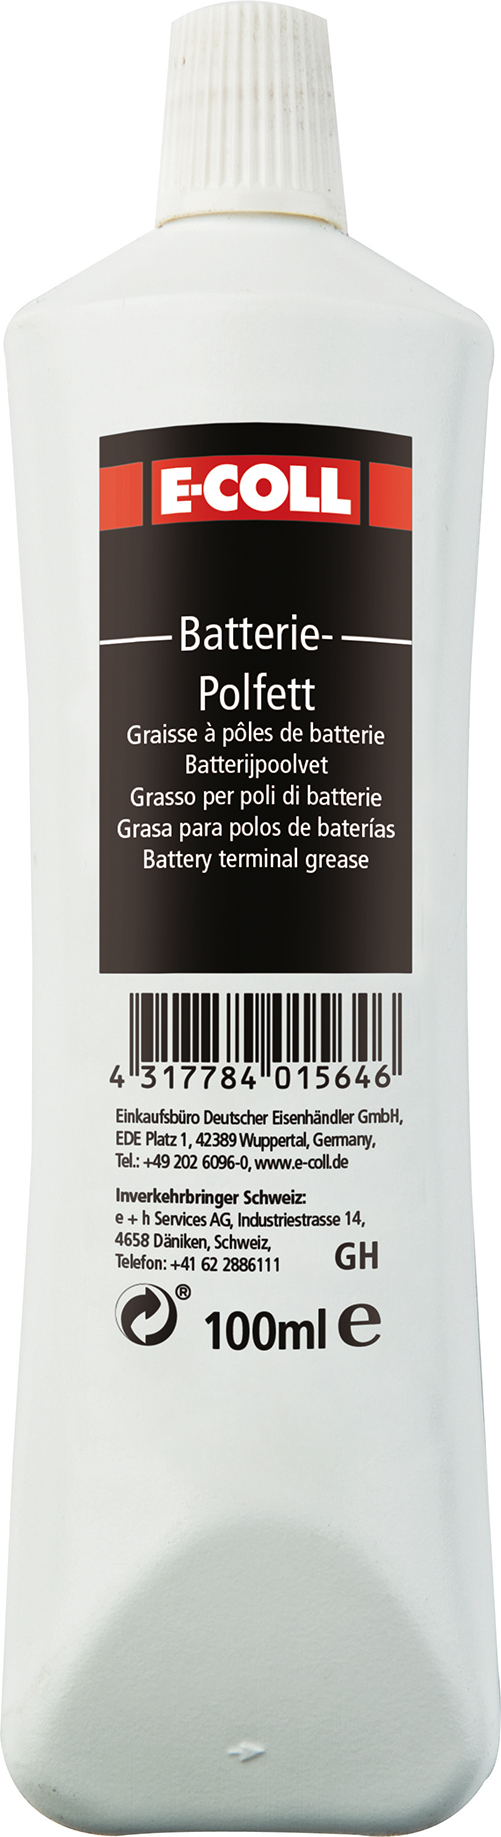 Picture of Batteriepolfett 100g E-COLL